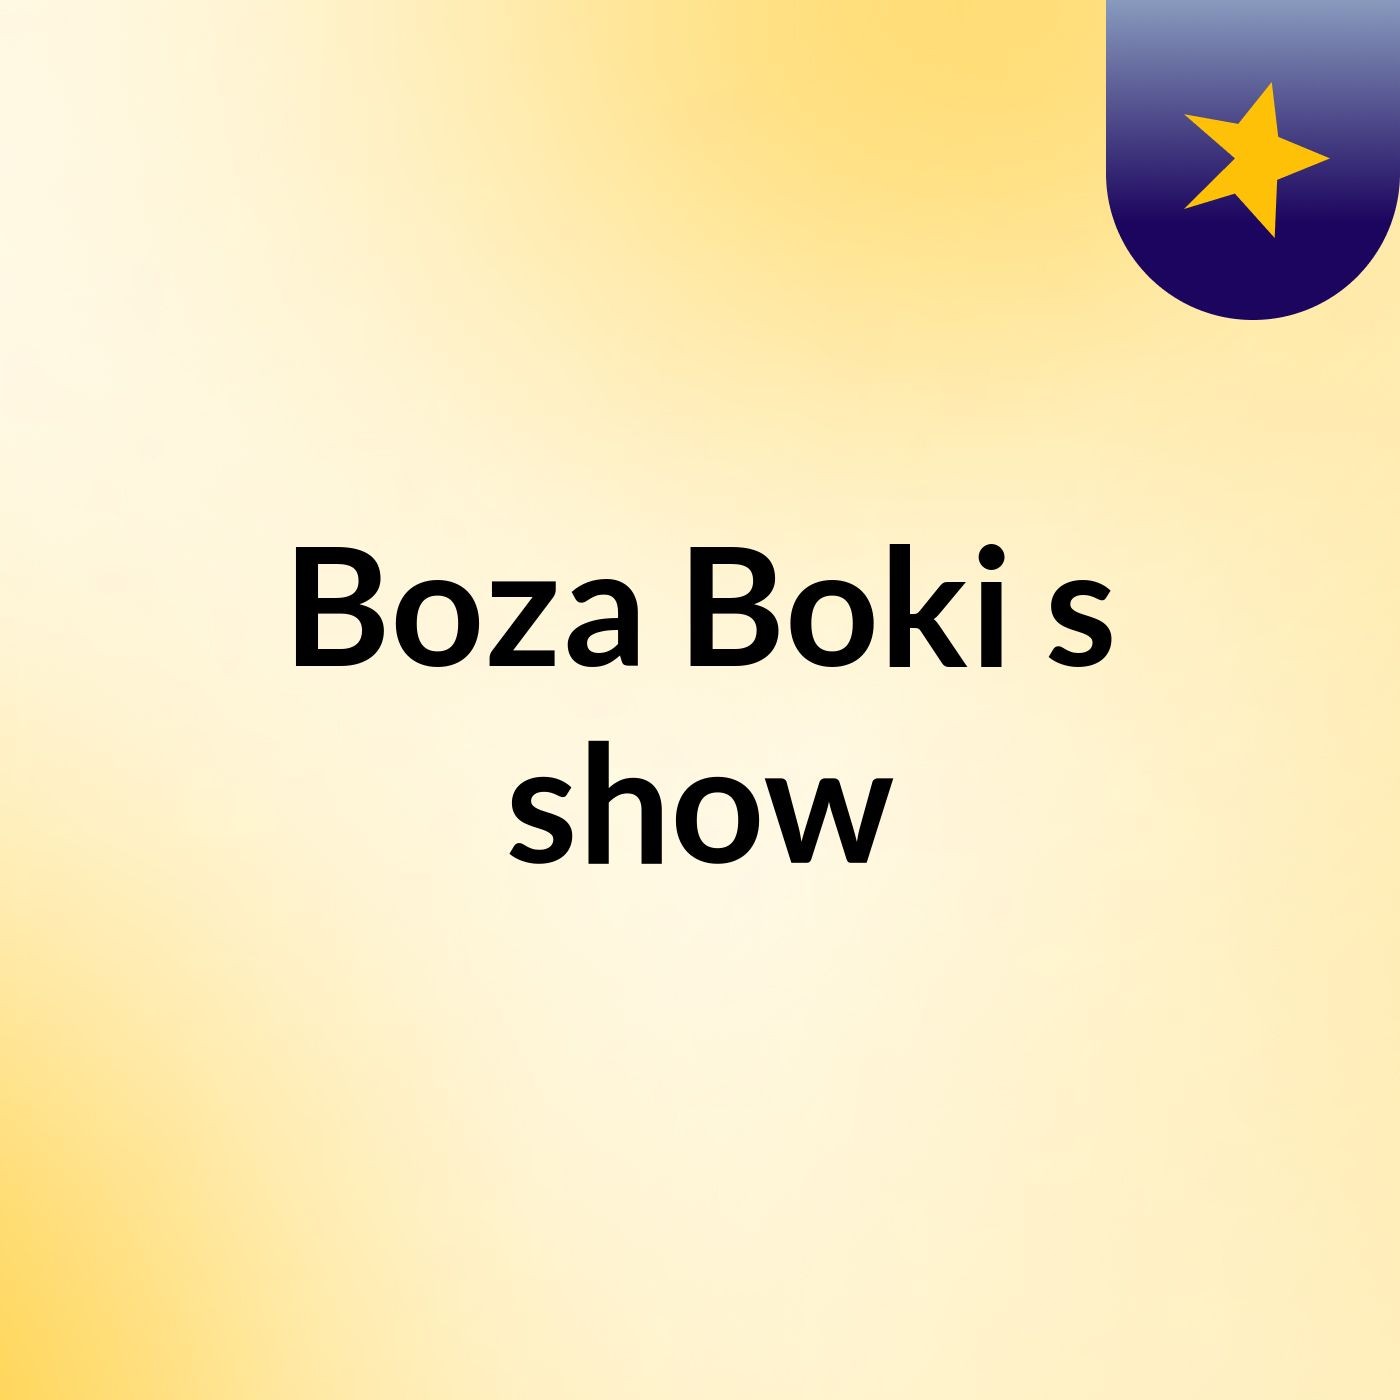 Boza Boki's show